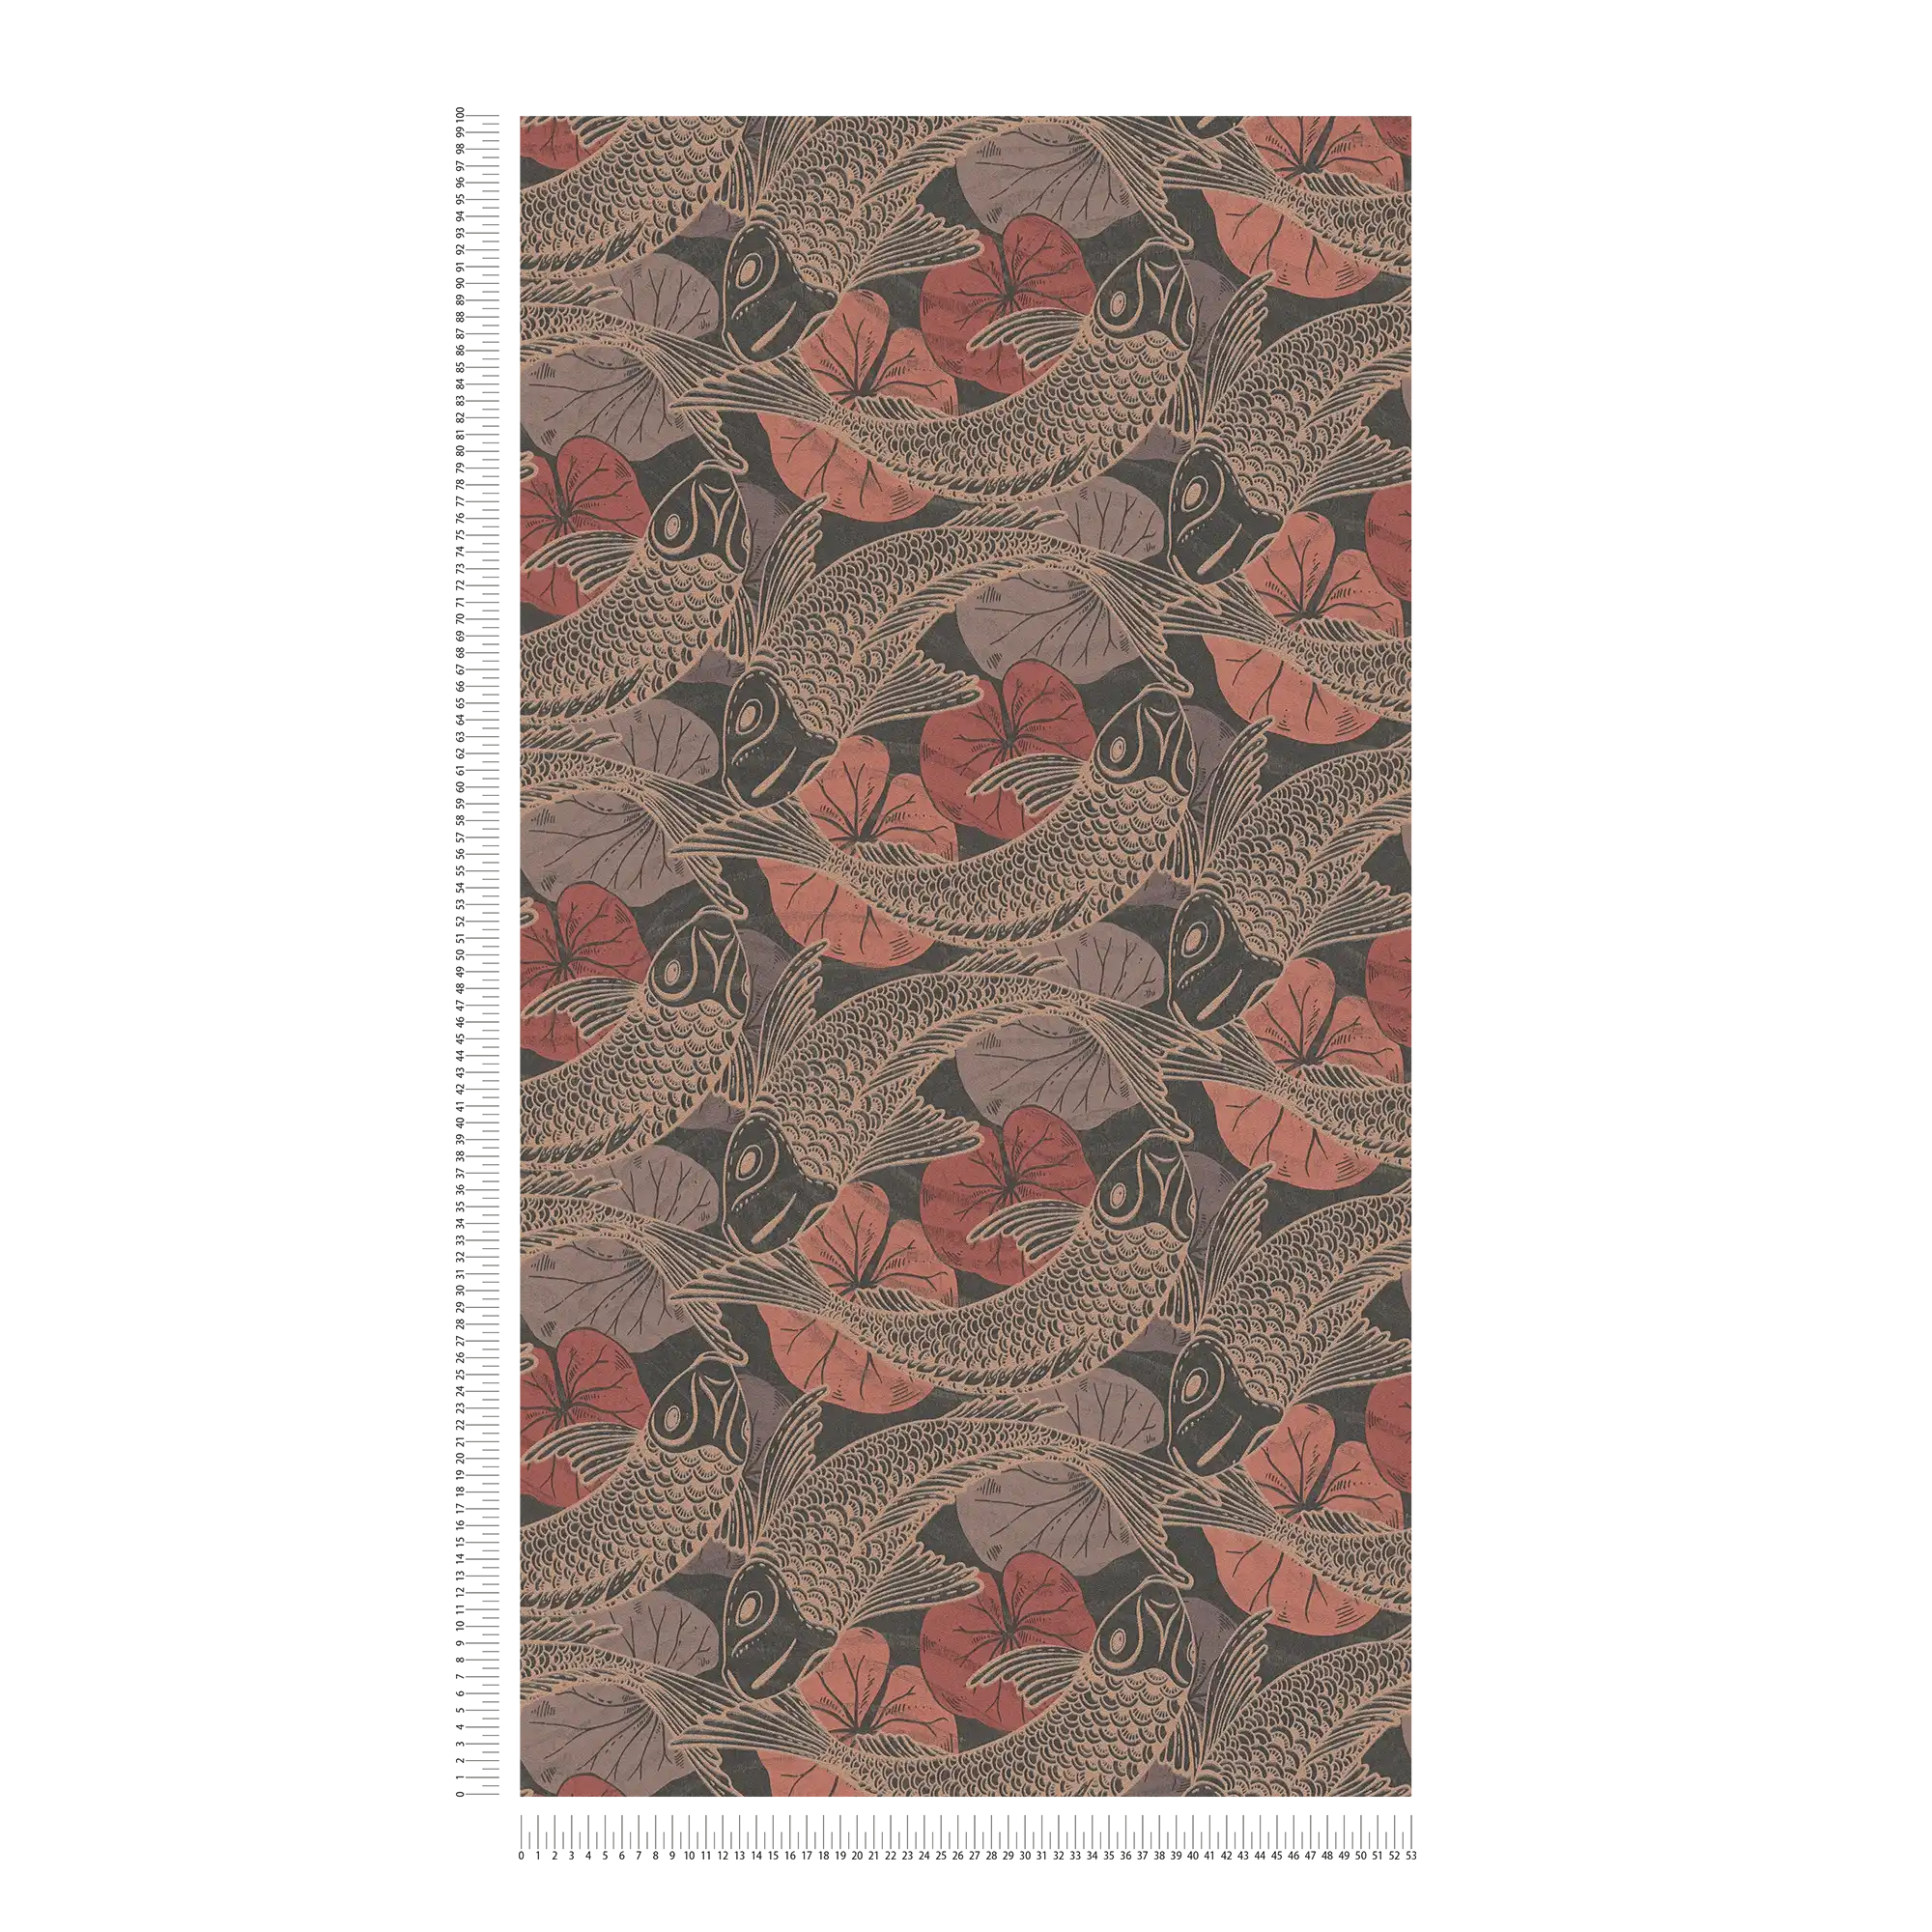             Patroonbehang koi motief met metallic accenten - bruin, rood, zwart
        